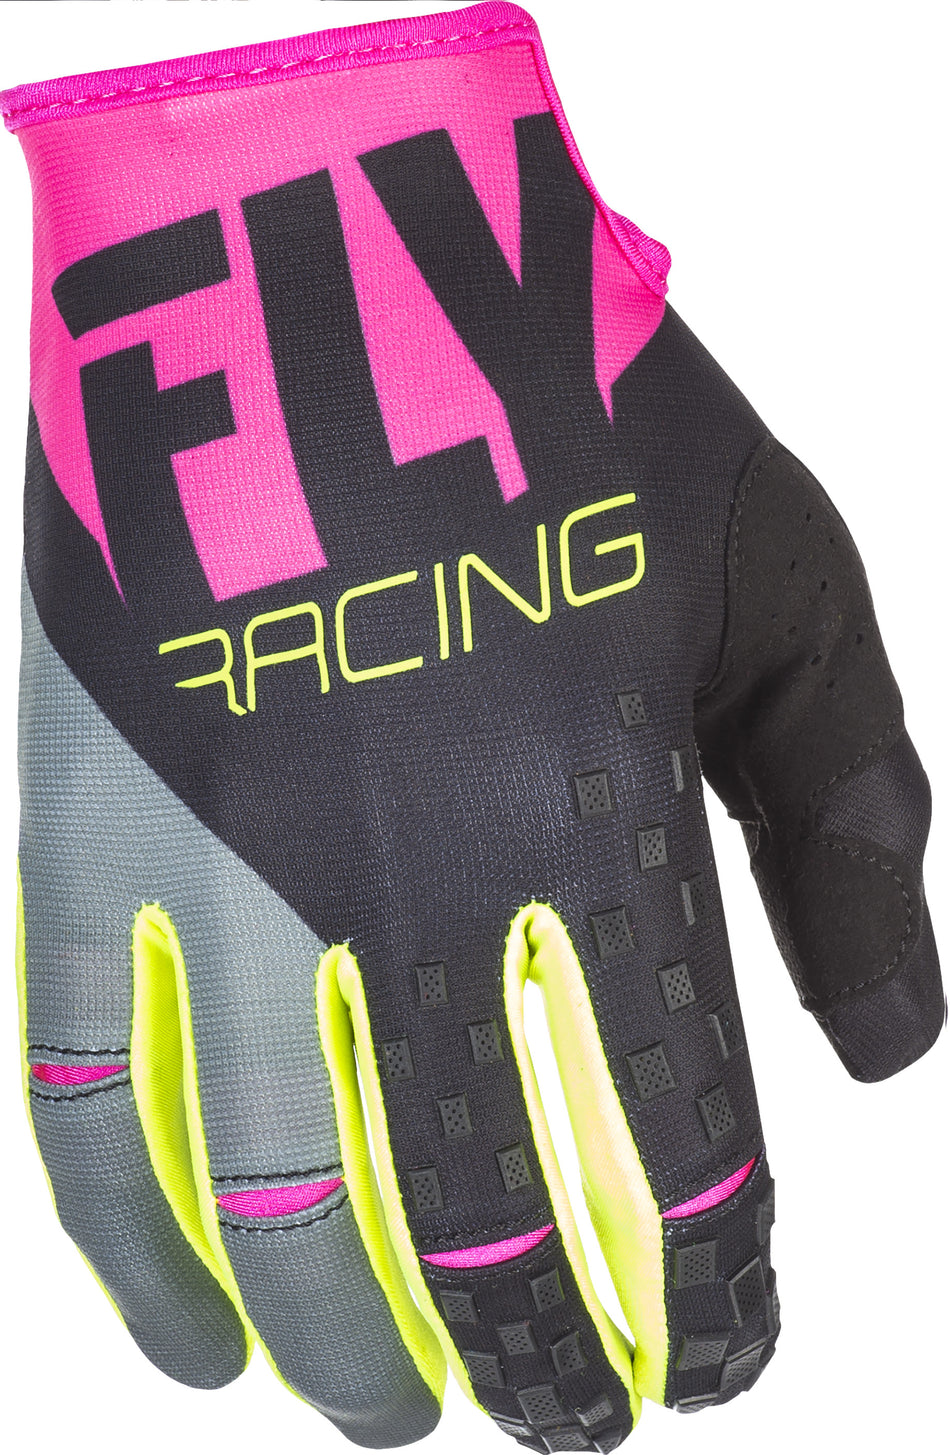 FLY RACING Kinetic Gloves Neon Pink/Black/Hi-Vis Sz 6 371-41906